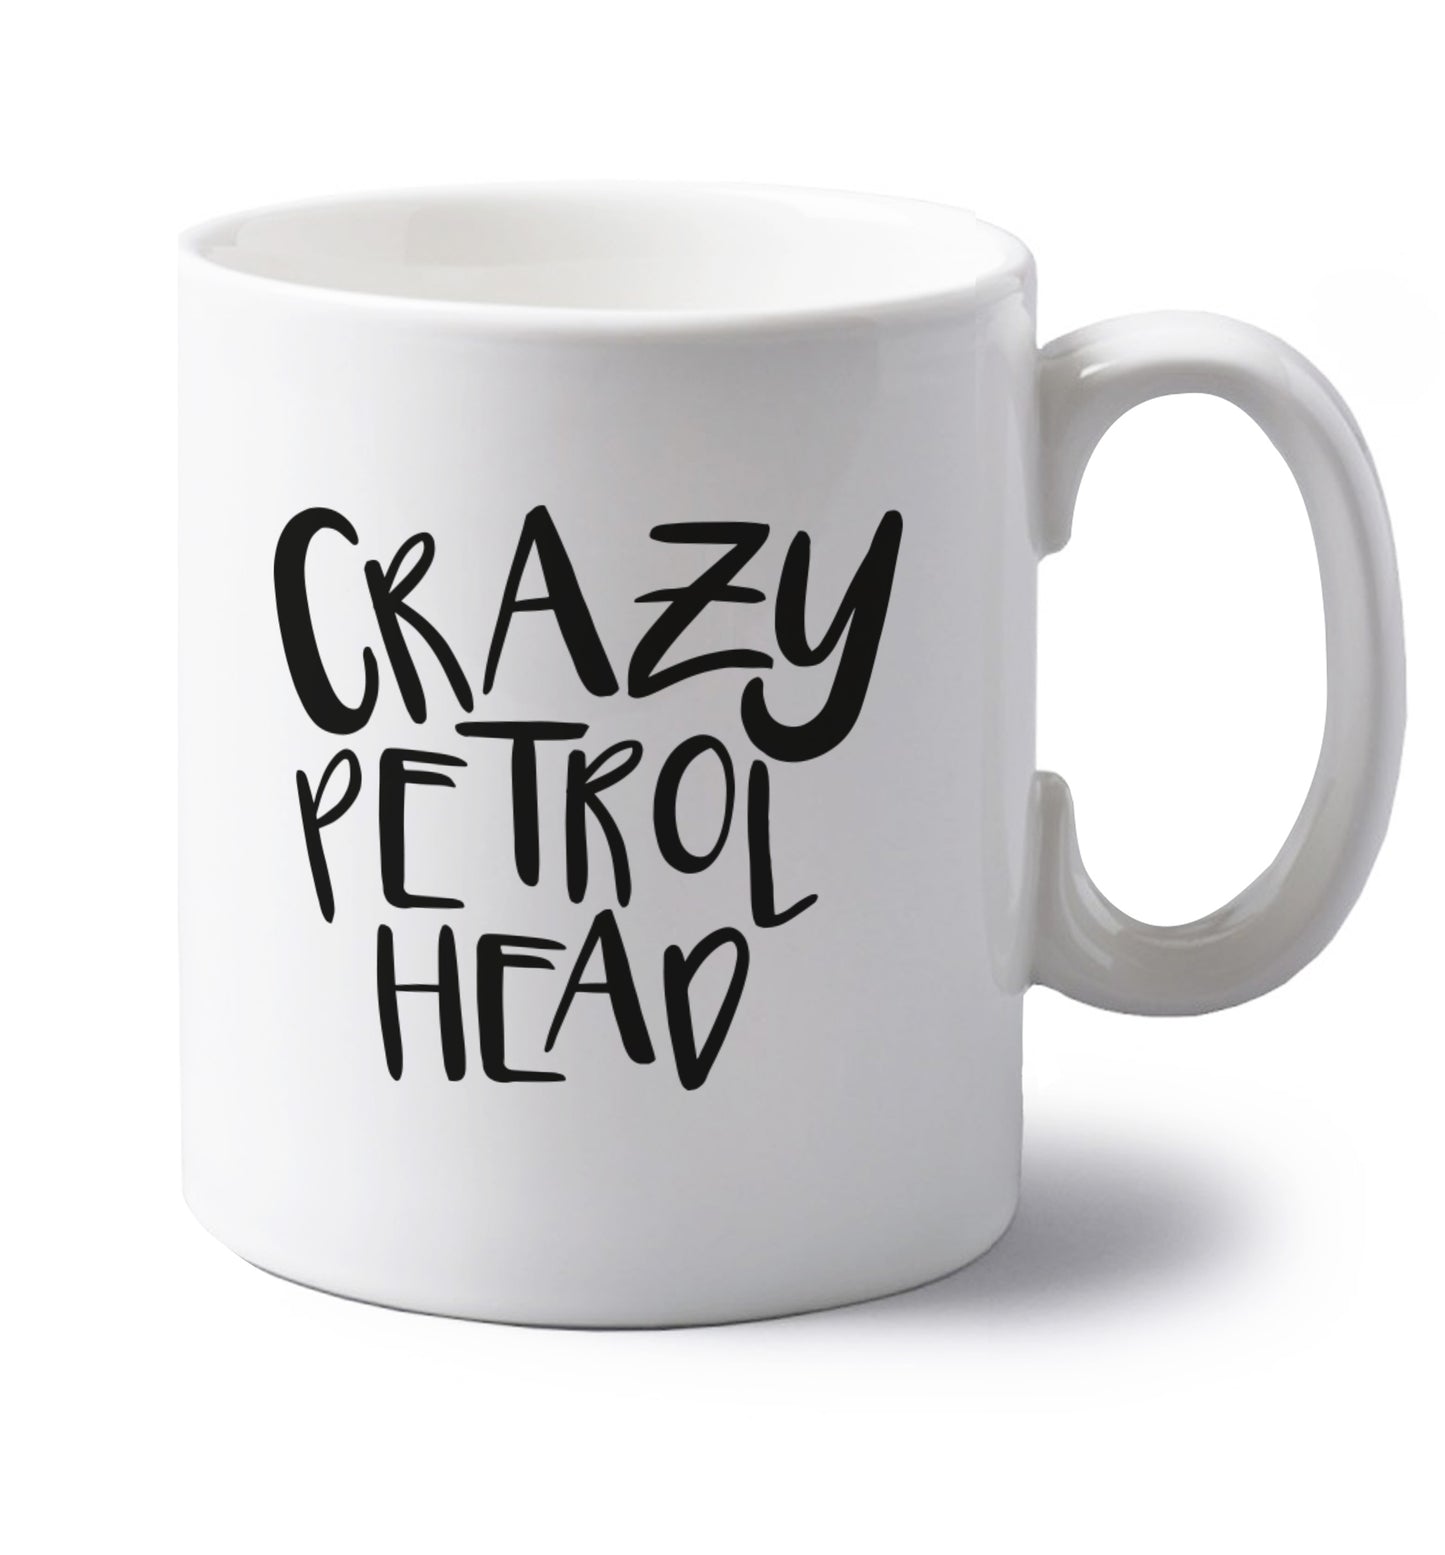 Crazy petrol head left handed white ceramic mug 